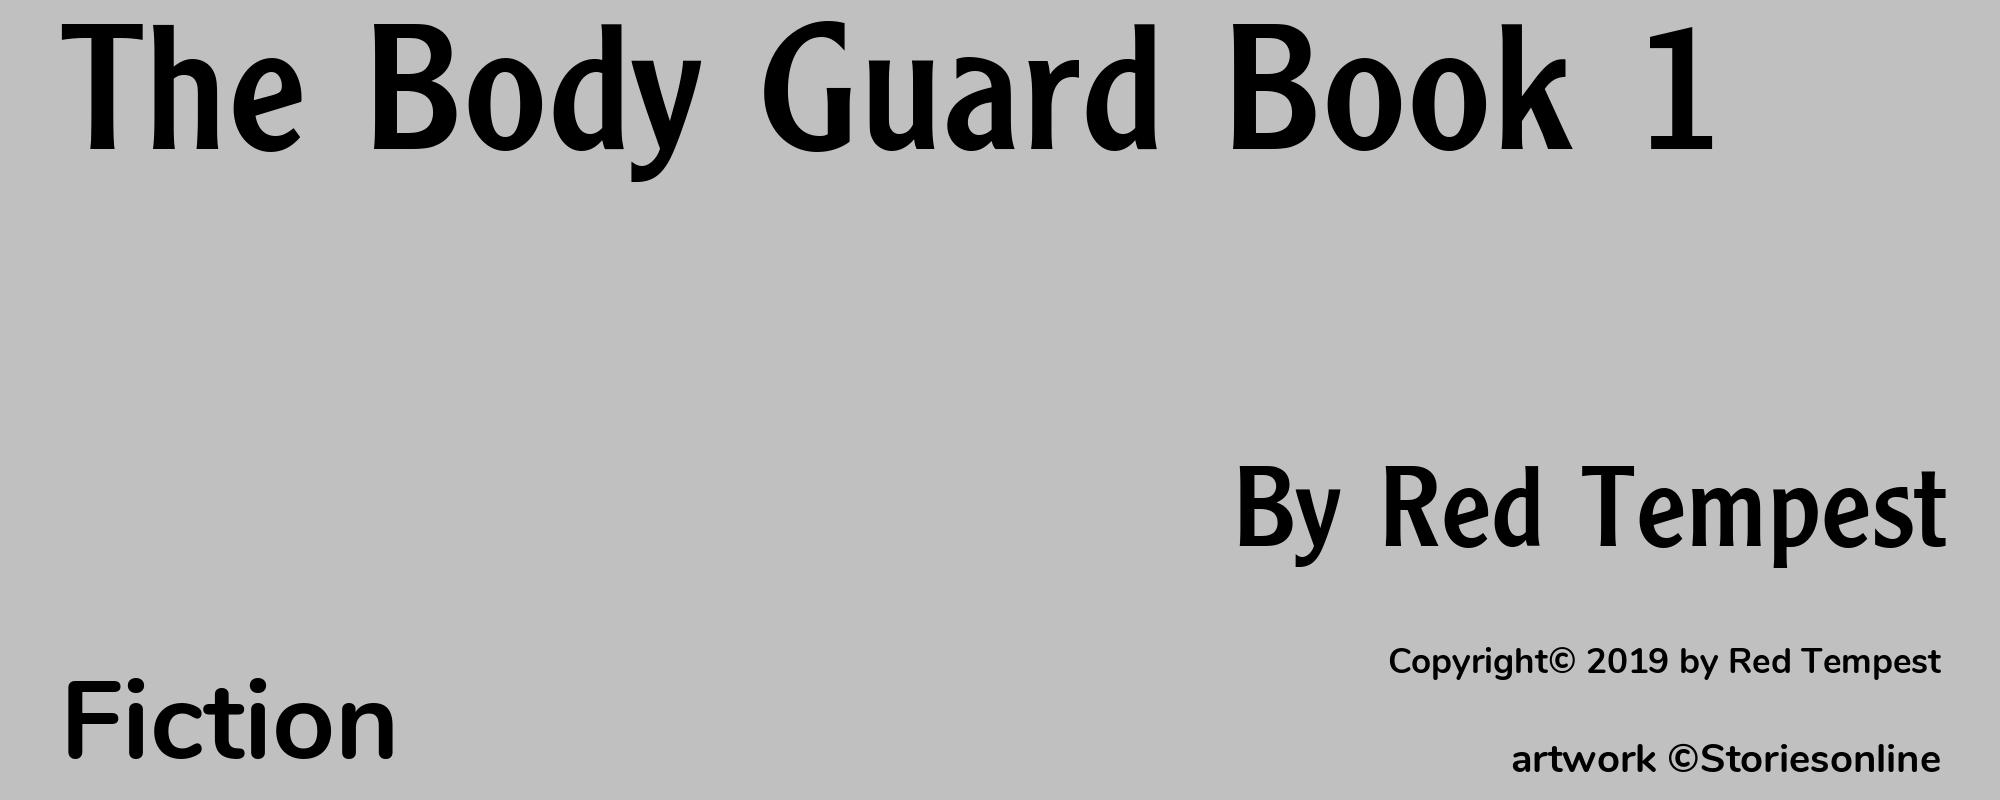 The Body Guard Book 1 - Cover